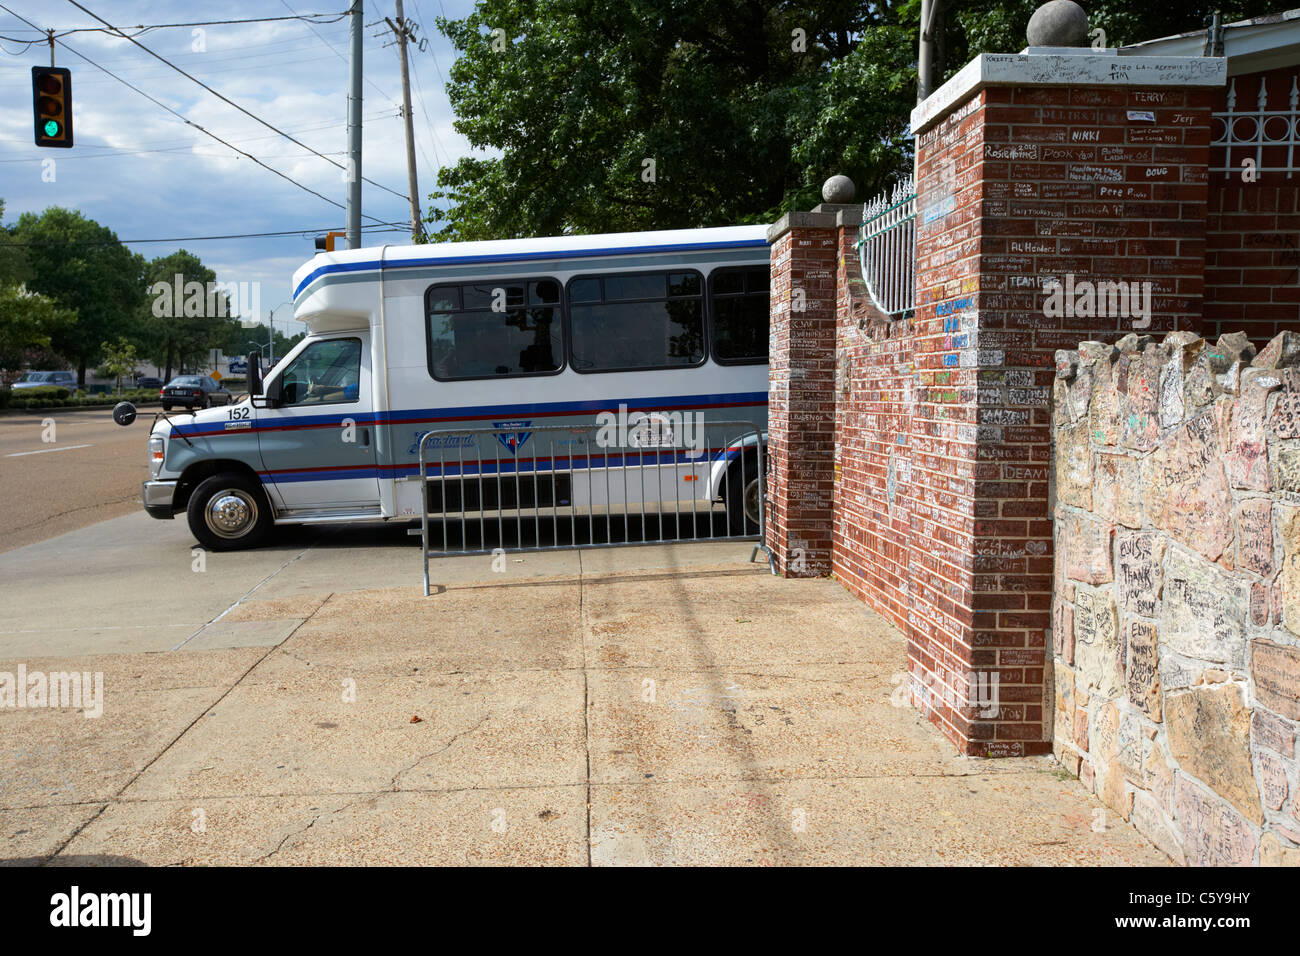 Tour bus lasciando i cancelli di graceland oltre il muro basso coperto di graffiti al di fuori di Graceland Memphis, Tennessee, Stati Uniti d'America Foto Stock